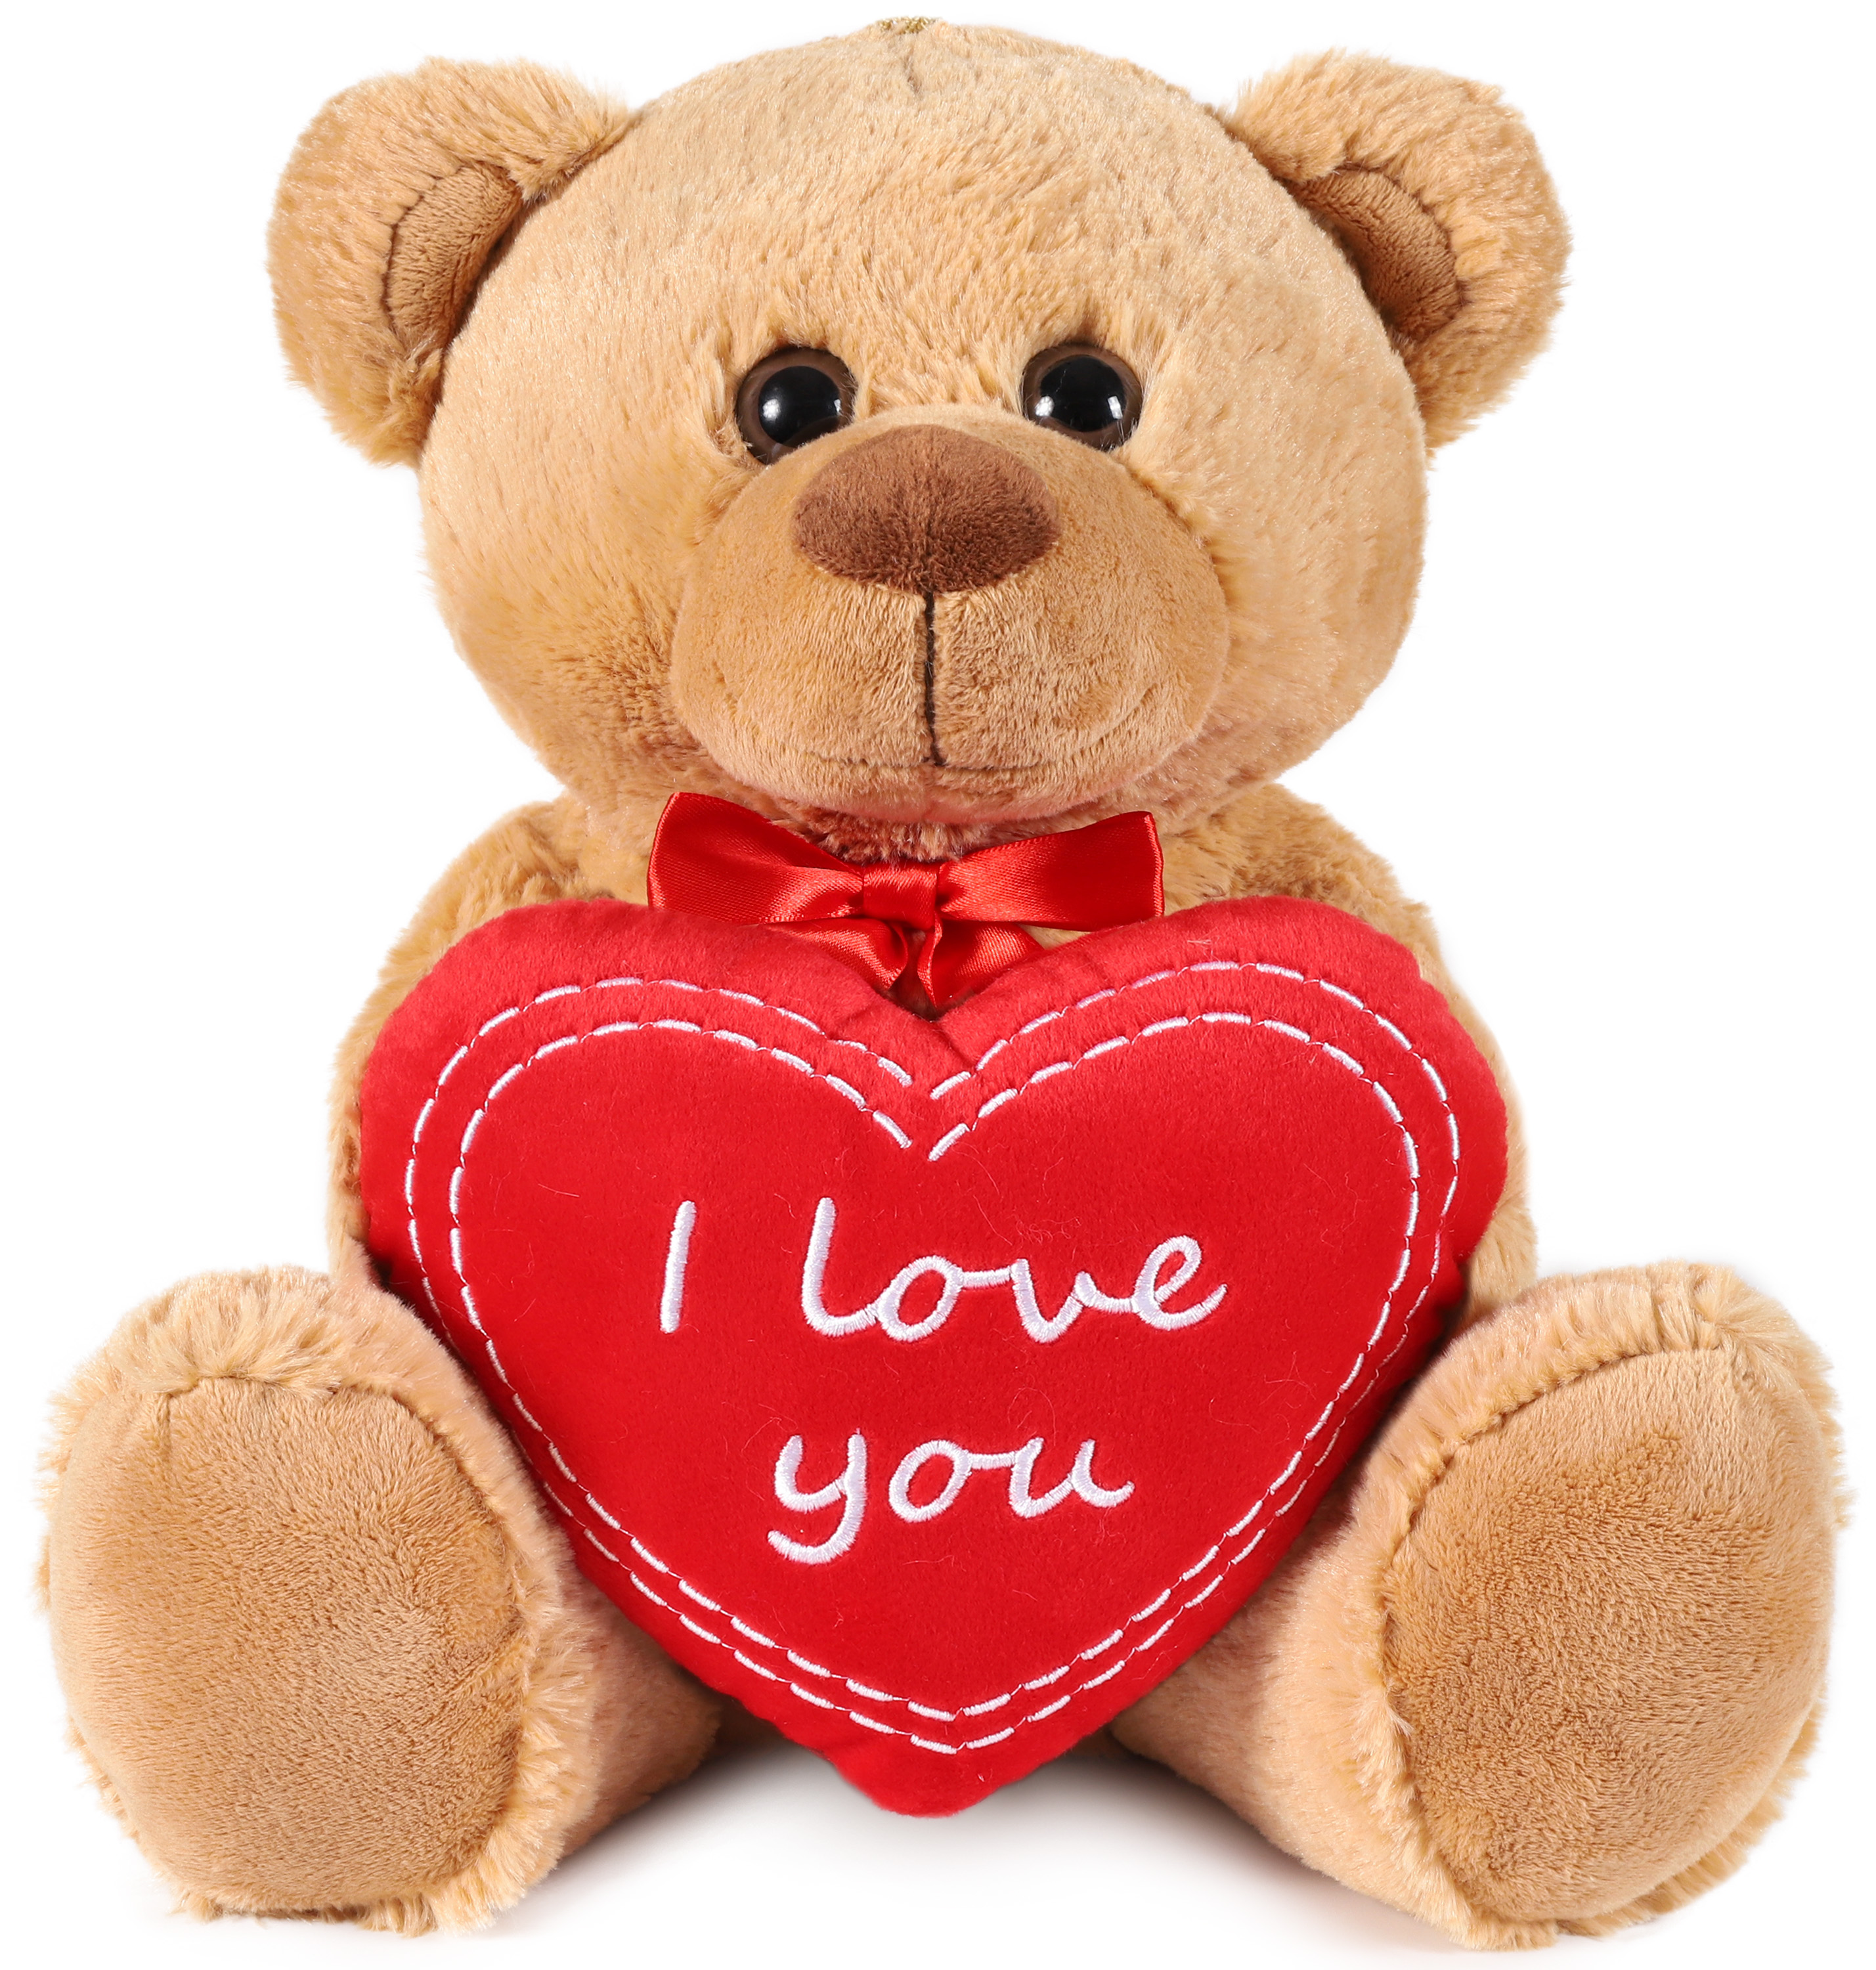 KWIKKI Teddybär Plüschbär mit Herz I LOVE YOU 60 cm XL Teddy Kuschelteddy 338679 